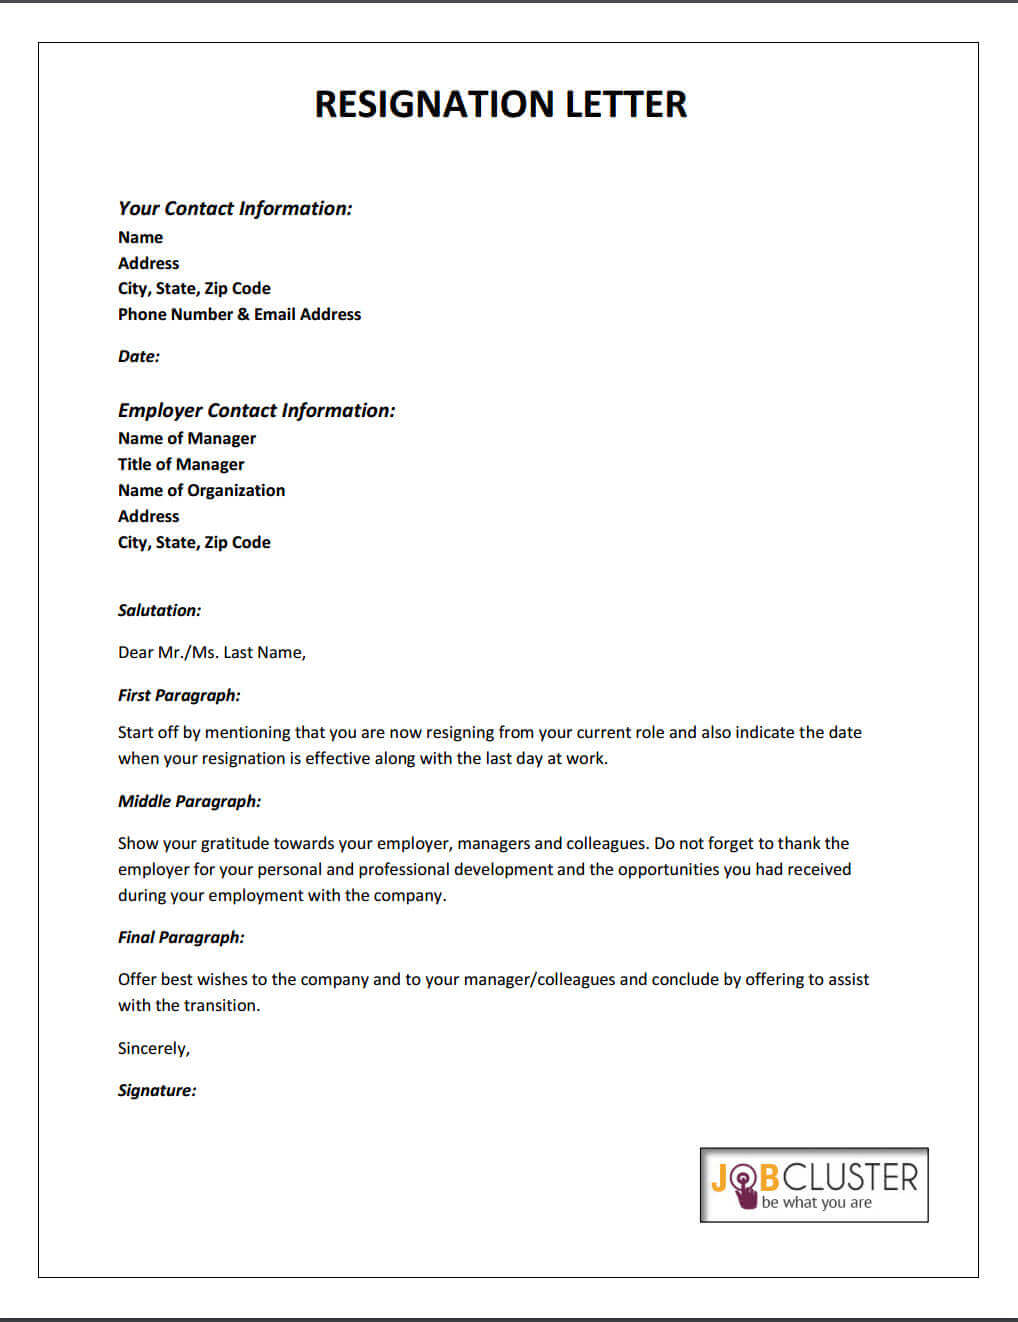 Resignation Letter Template.jpg